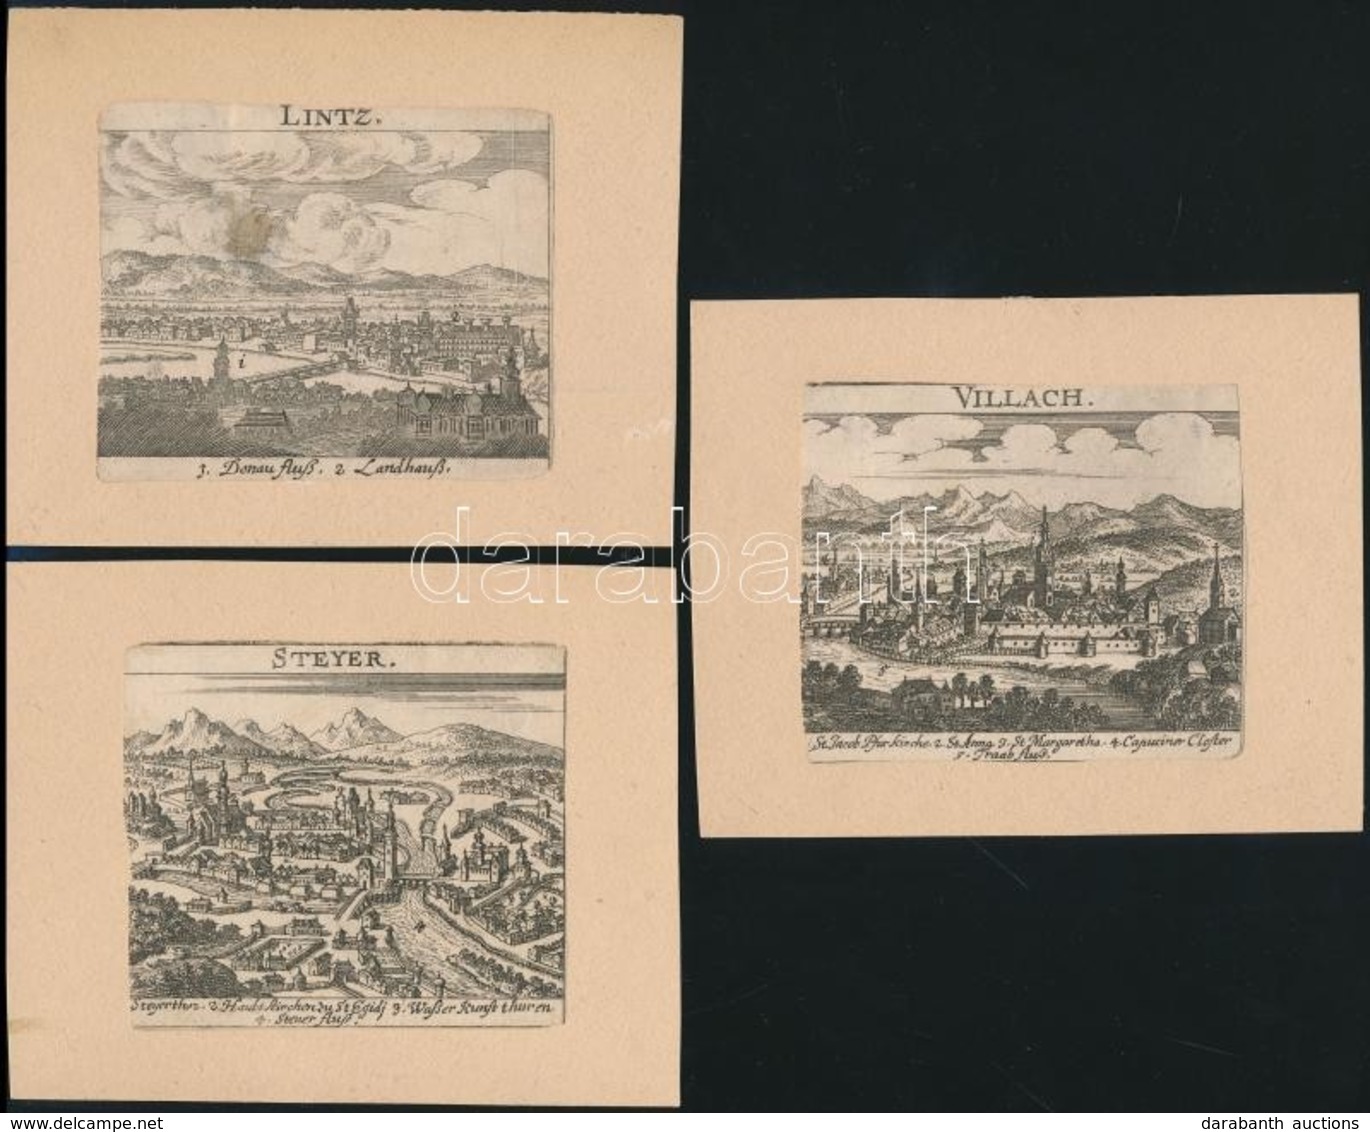 Cca 1700 Linz, Villach, Steyer Rézmetszetű Városképek Kartonon / Copper Plate Images Of Austrian Cities. 8,5x7,5 Cm - Prints & Engravings